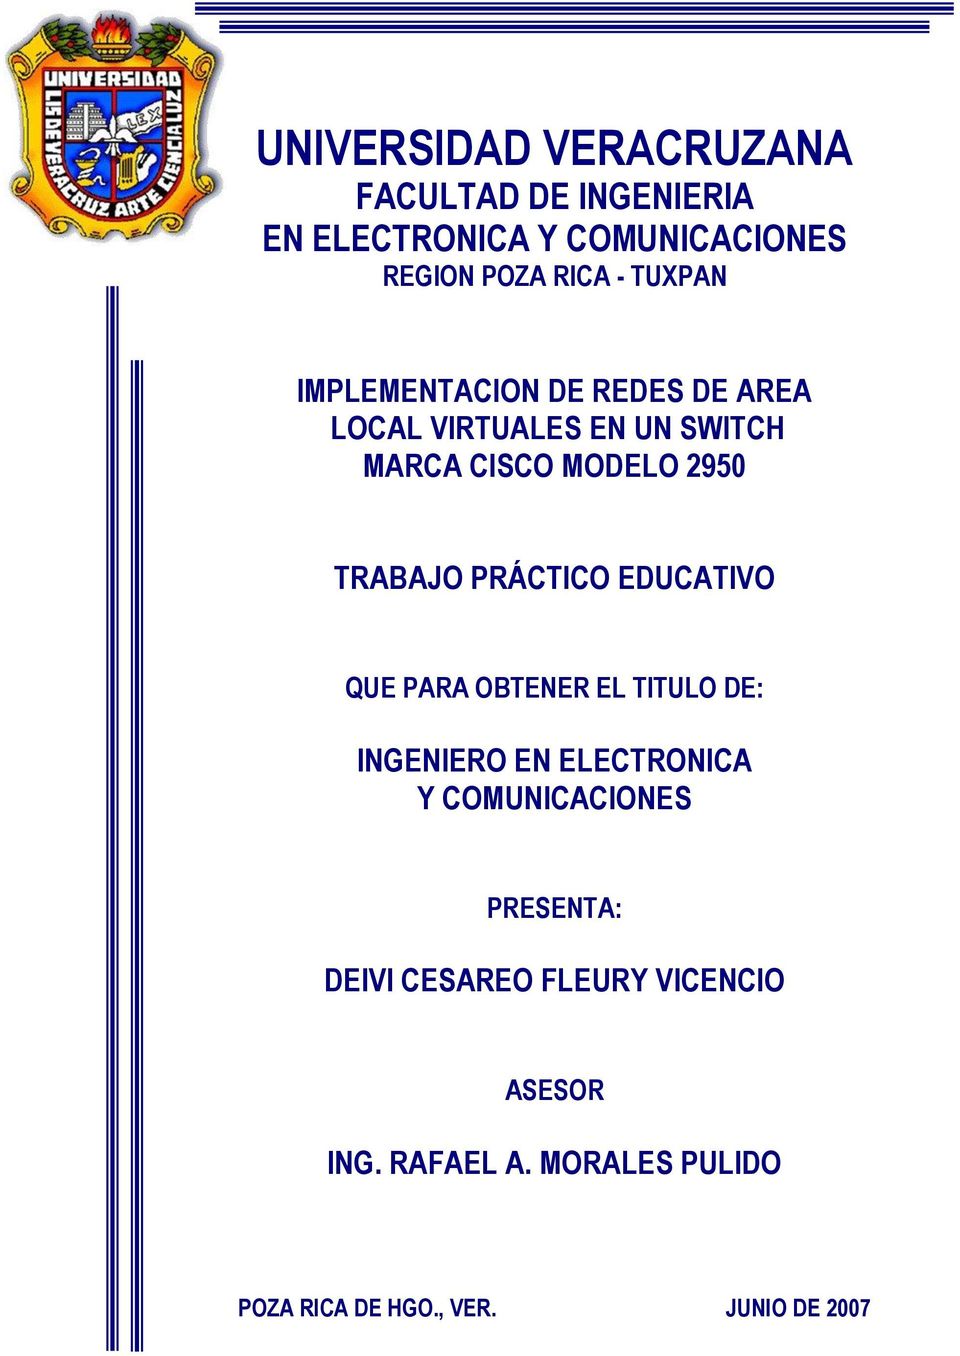 PRÁCTICO EDUCATIVO QUE PARA OBTENER EL TITULO DE: INGENIERO EN ELECTRONICA Y COMUNICACIONES